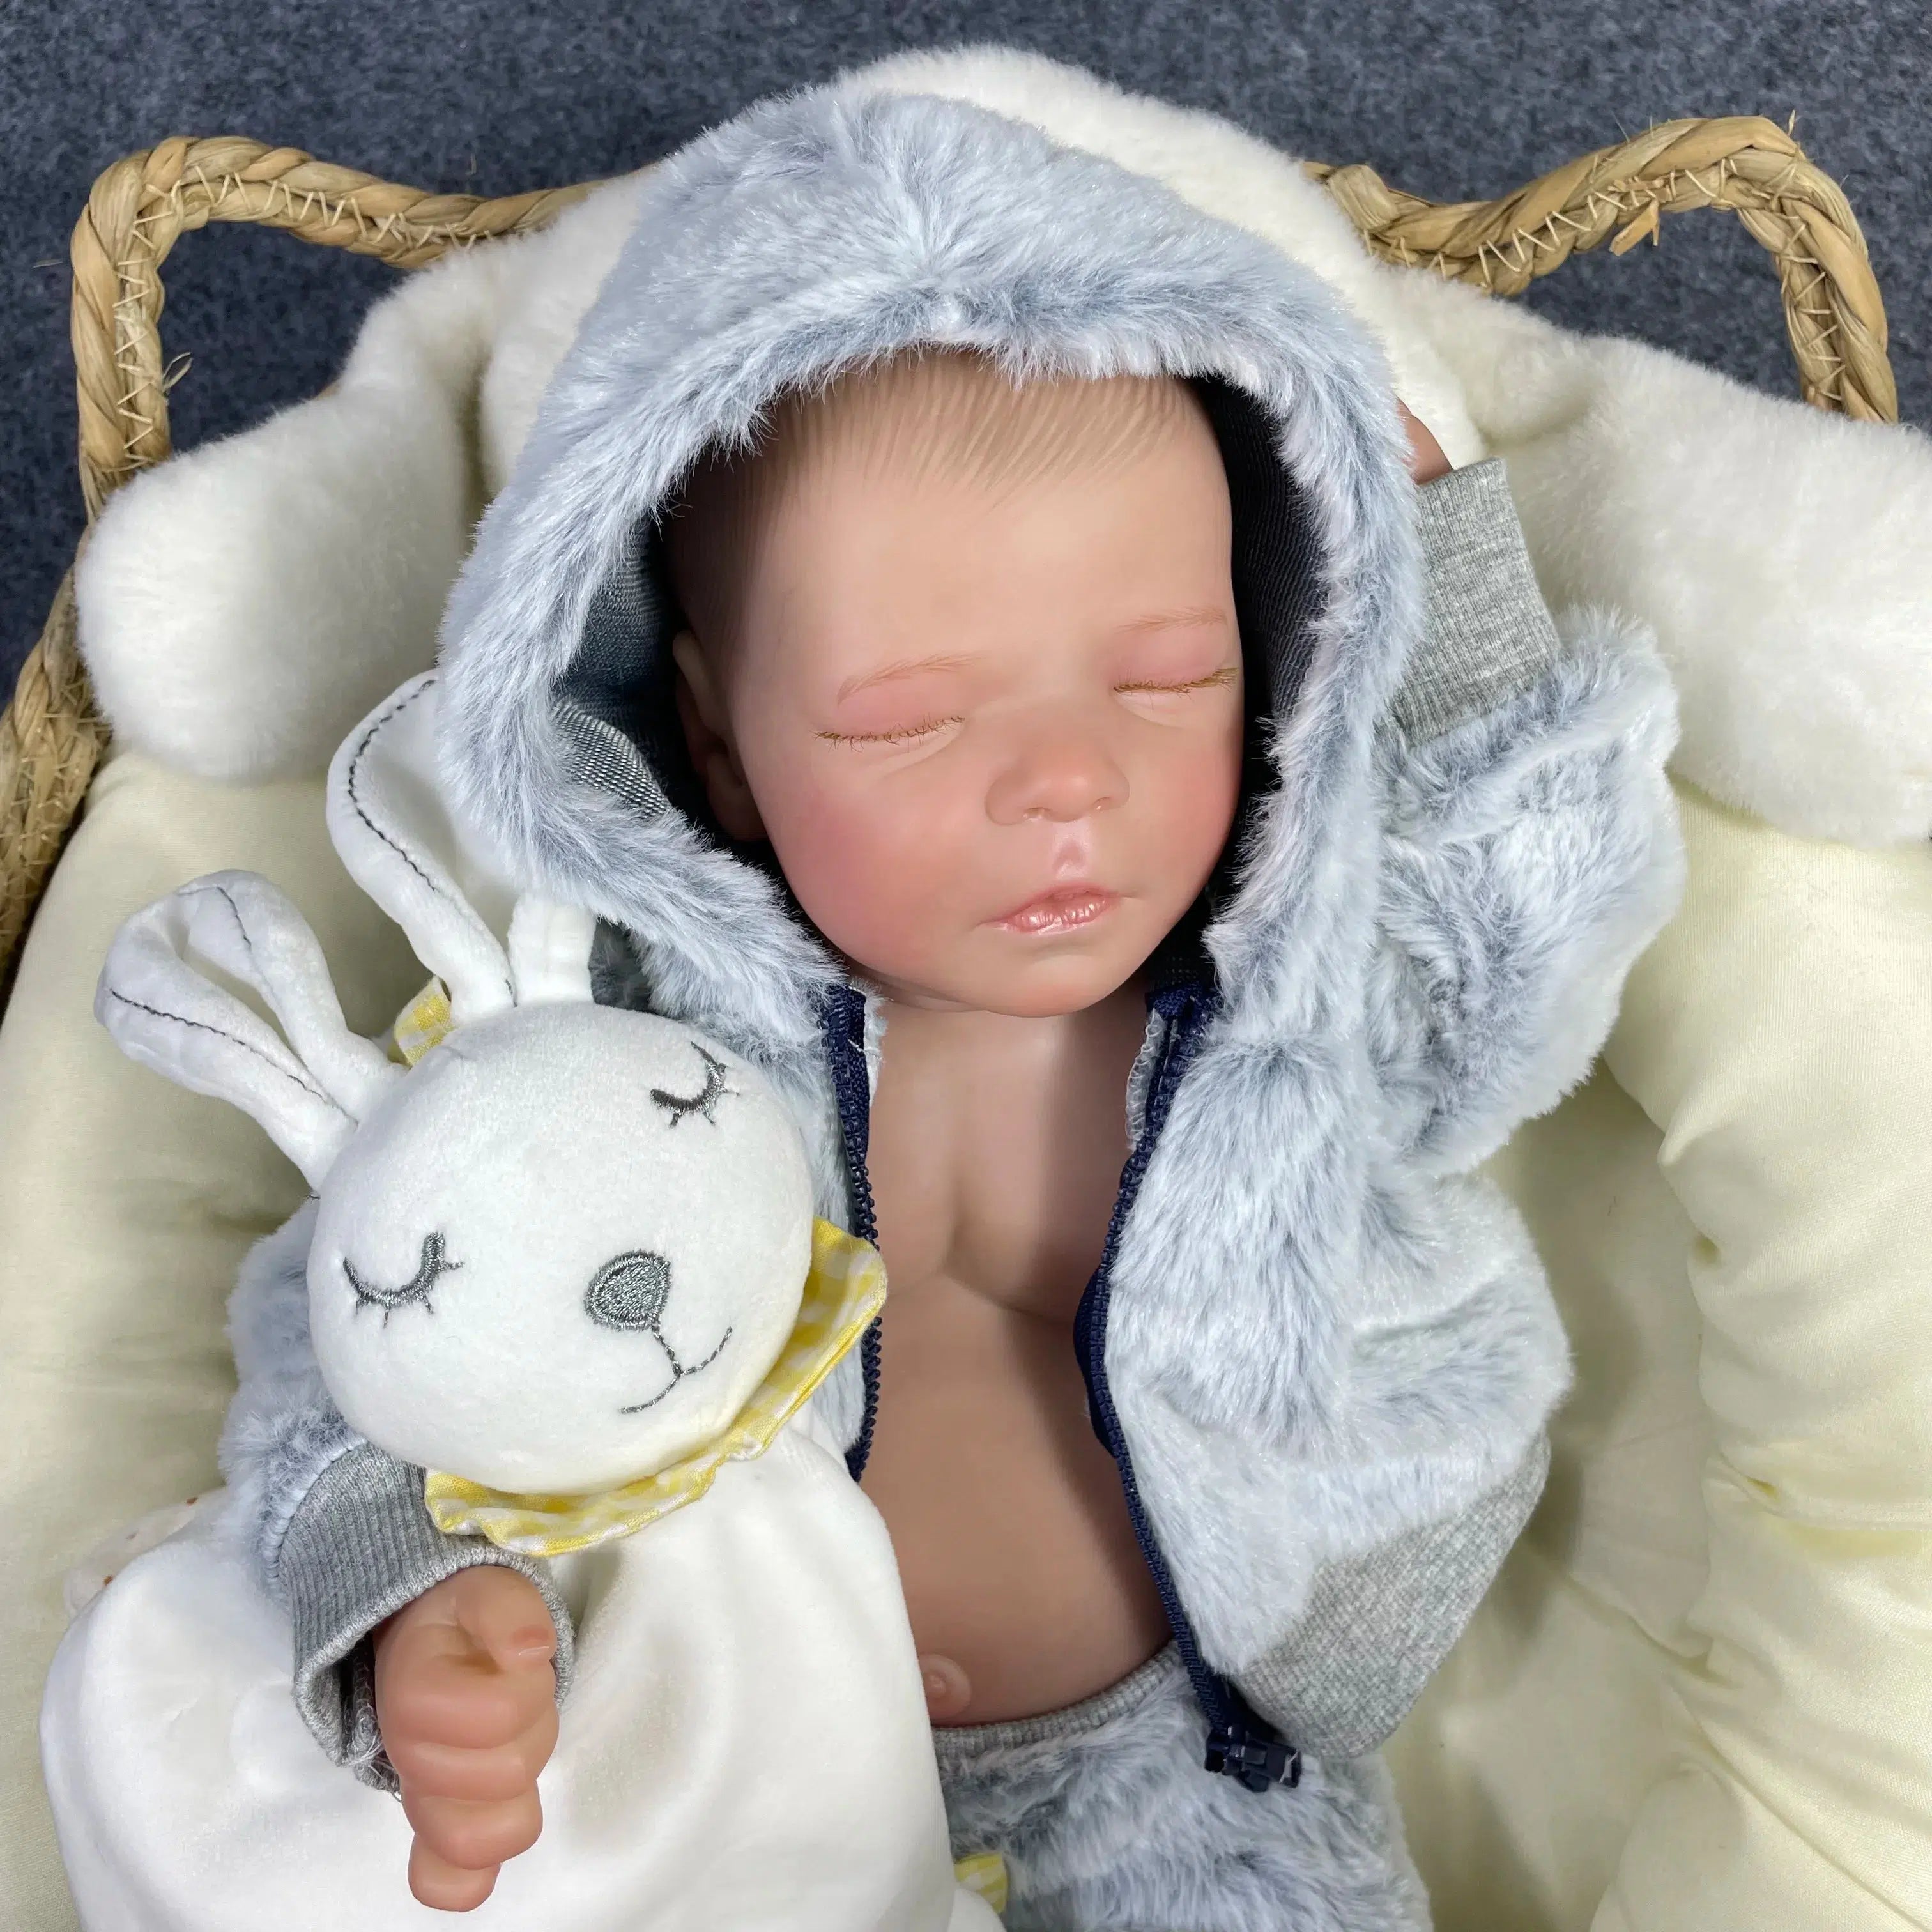 17-Inch Reborn Toddler Boy Doll: Soft Full Body Silicone, Flexible